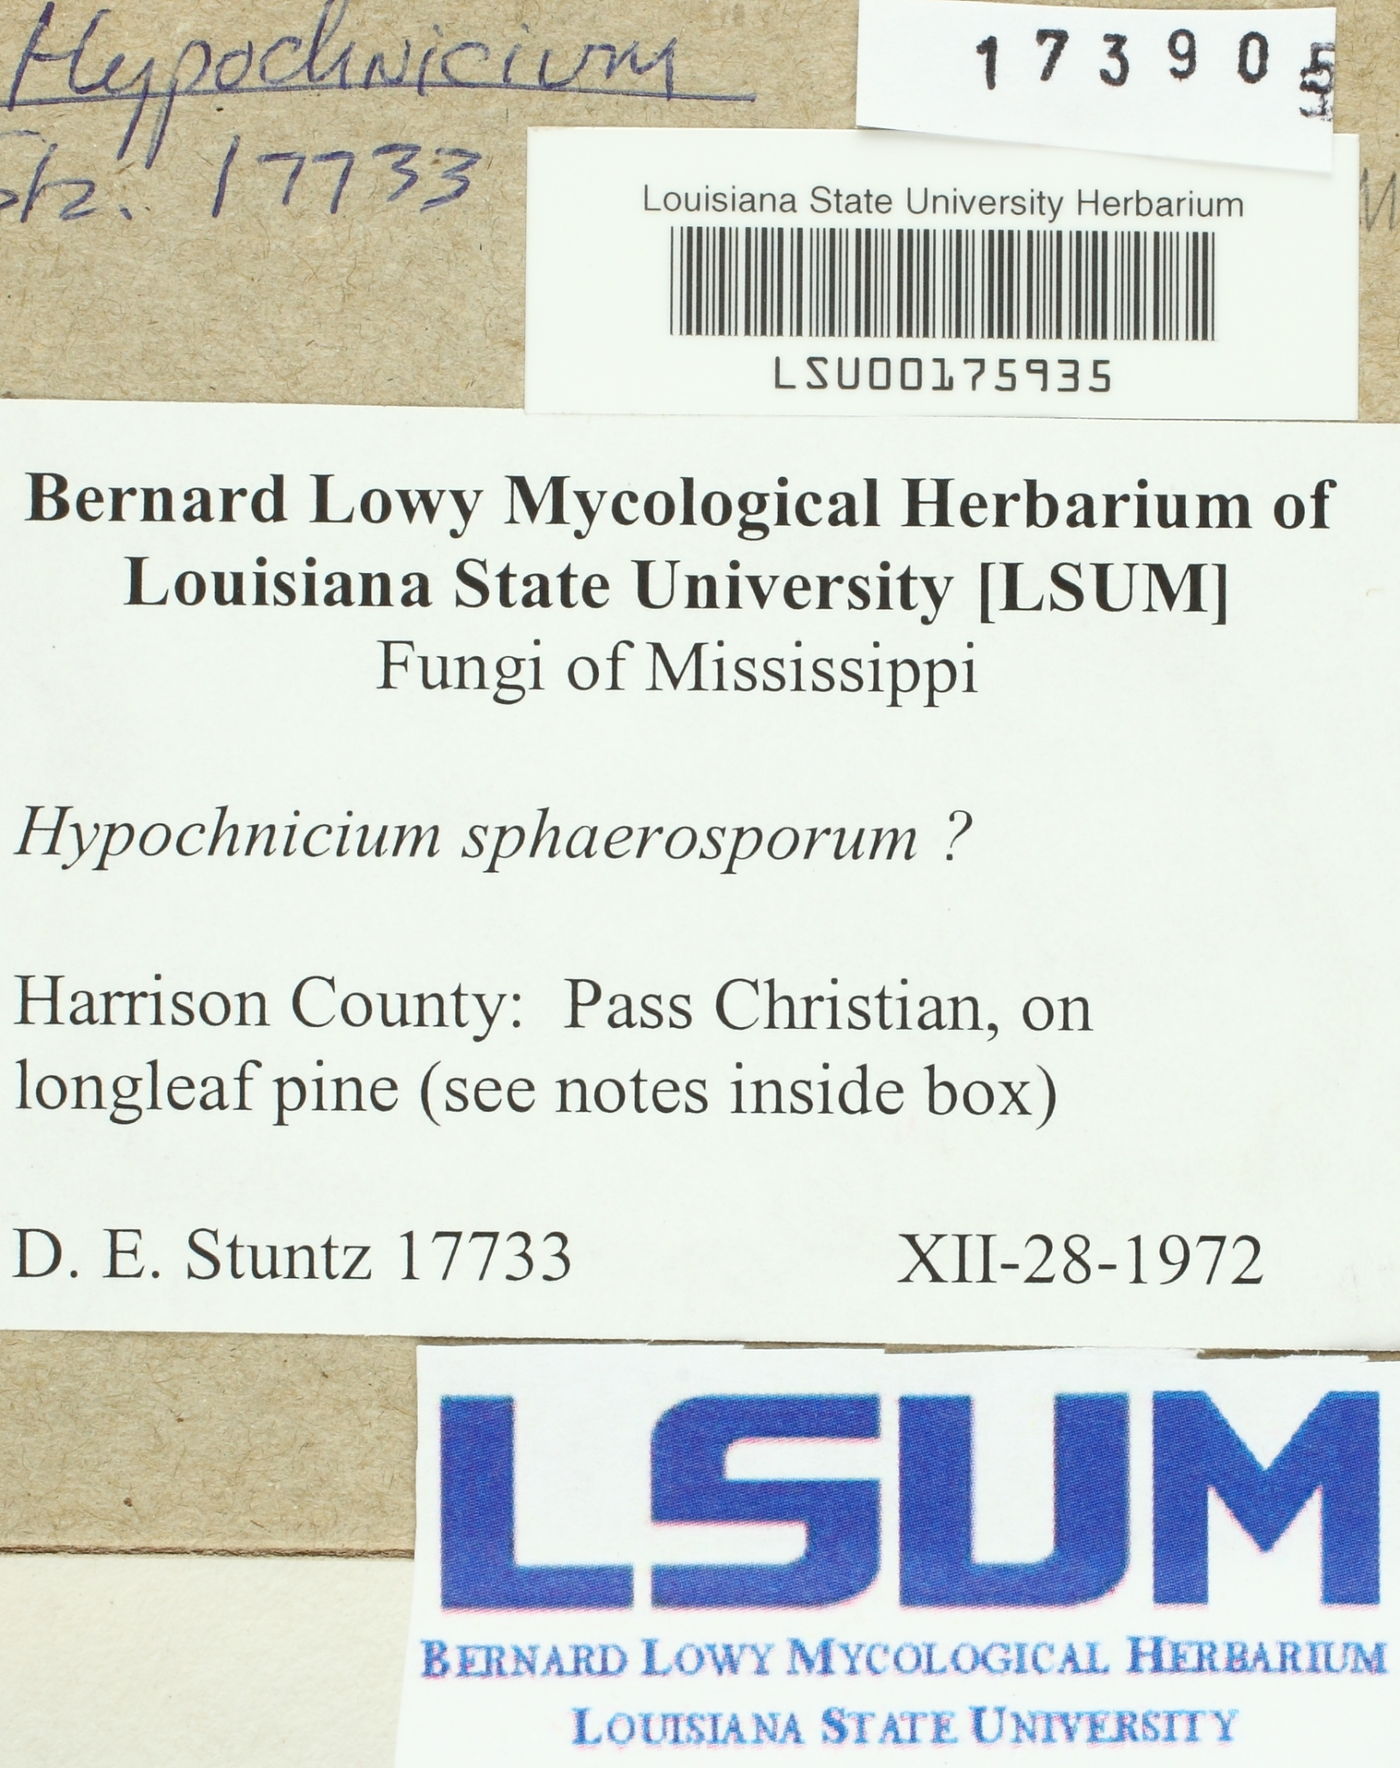 Hypochnicium sphaerosporum image